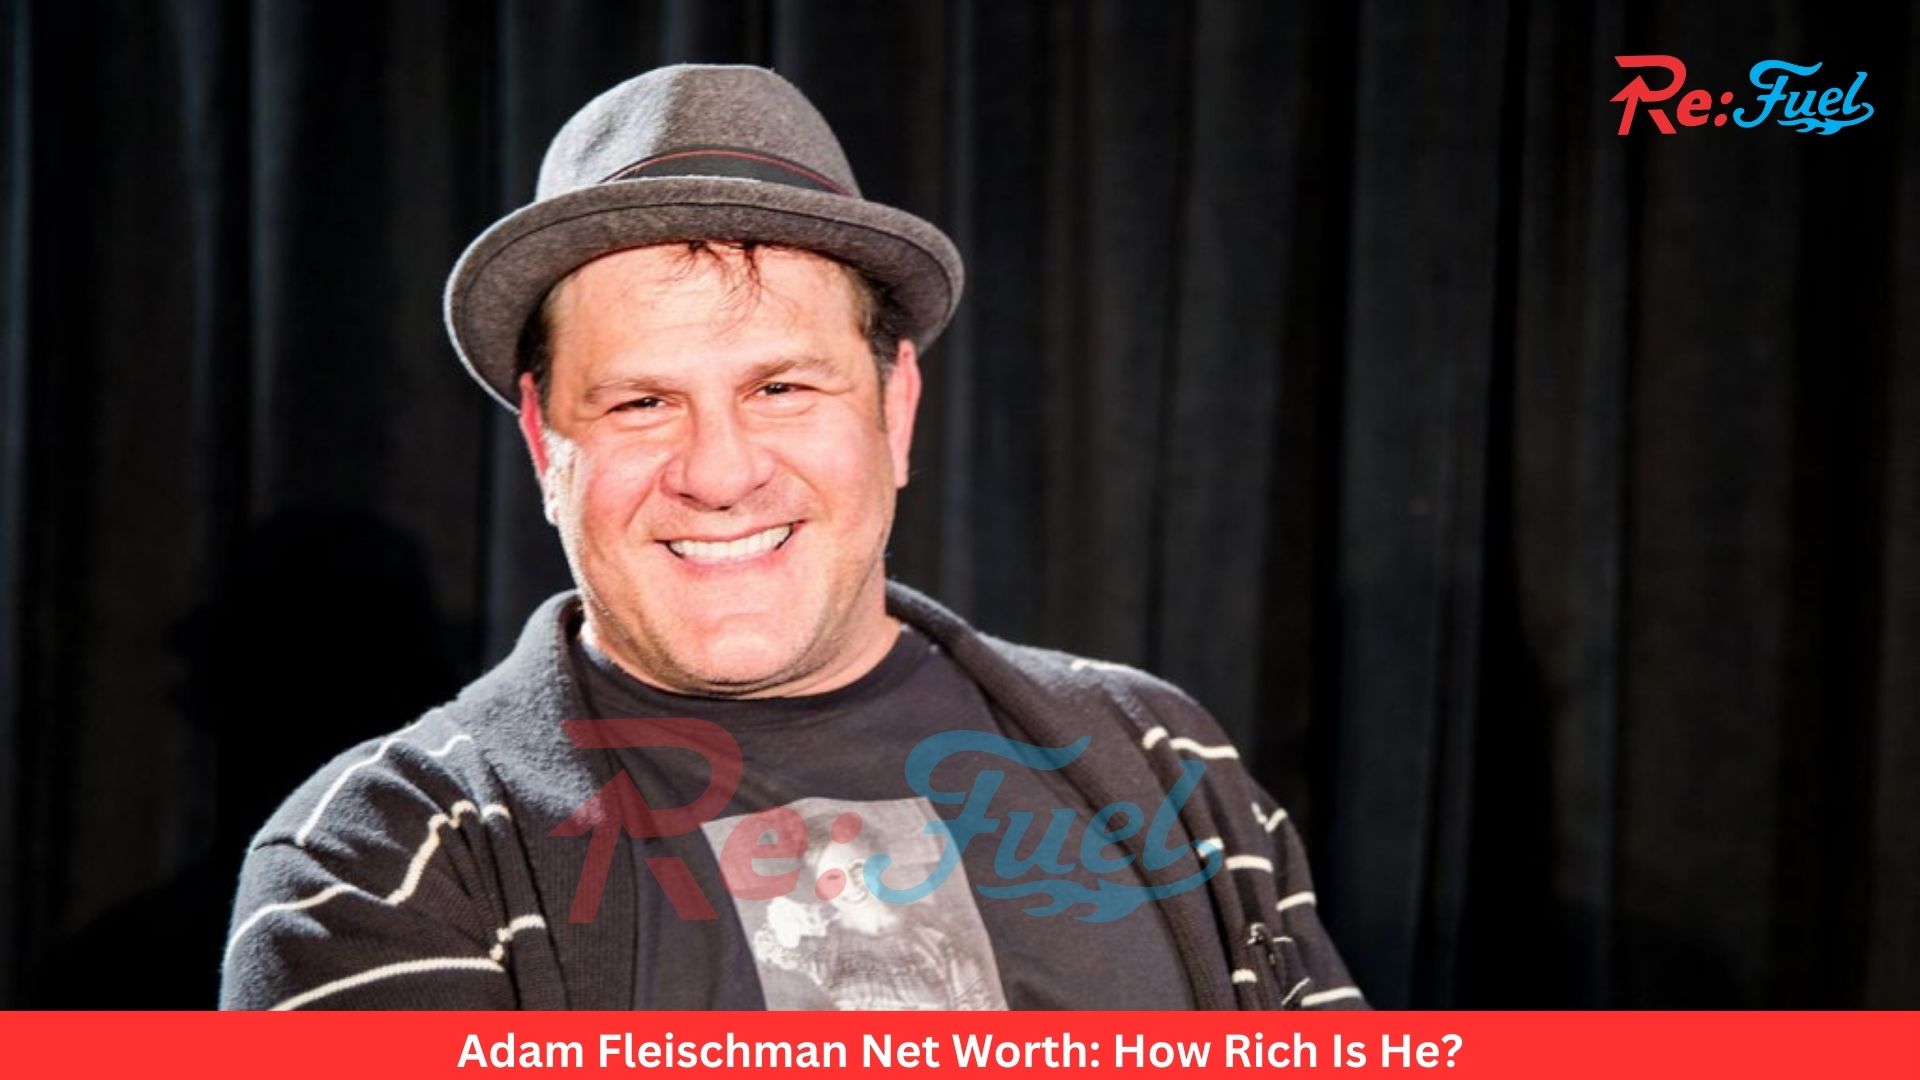 Adam Fleischman Net Worth: How Rich Is He?